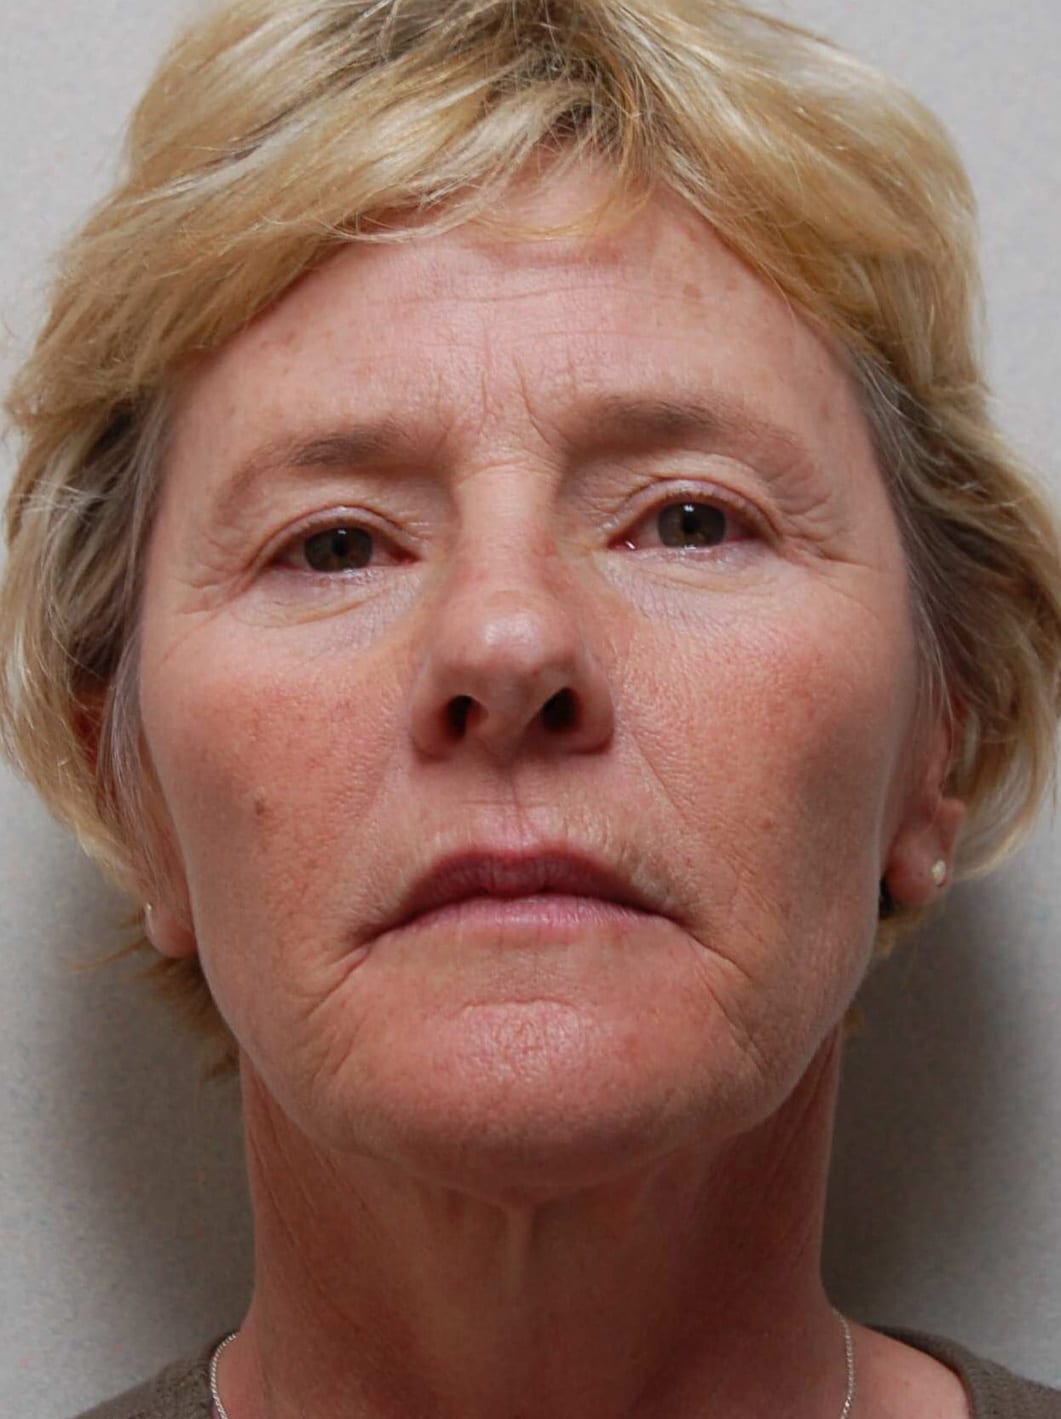 Facial Rejuvenation Patient Photo - Case 3802 - before view-